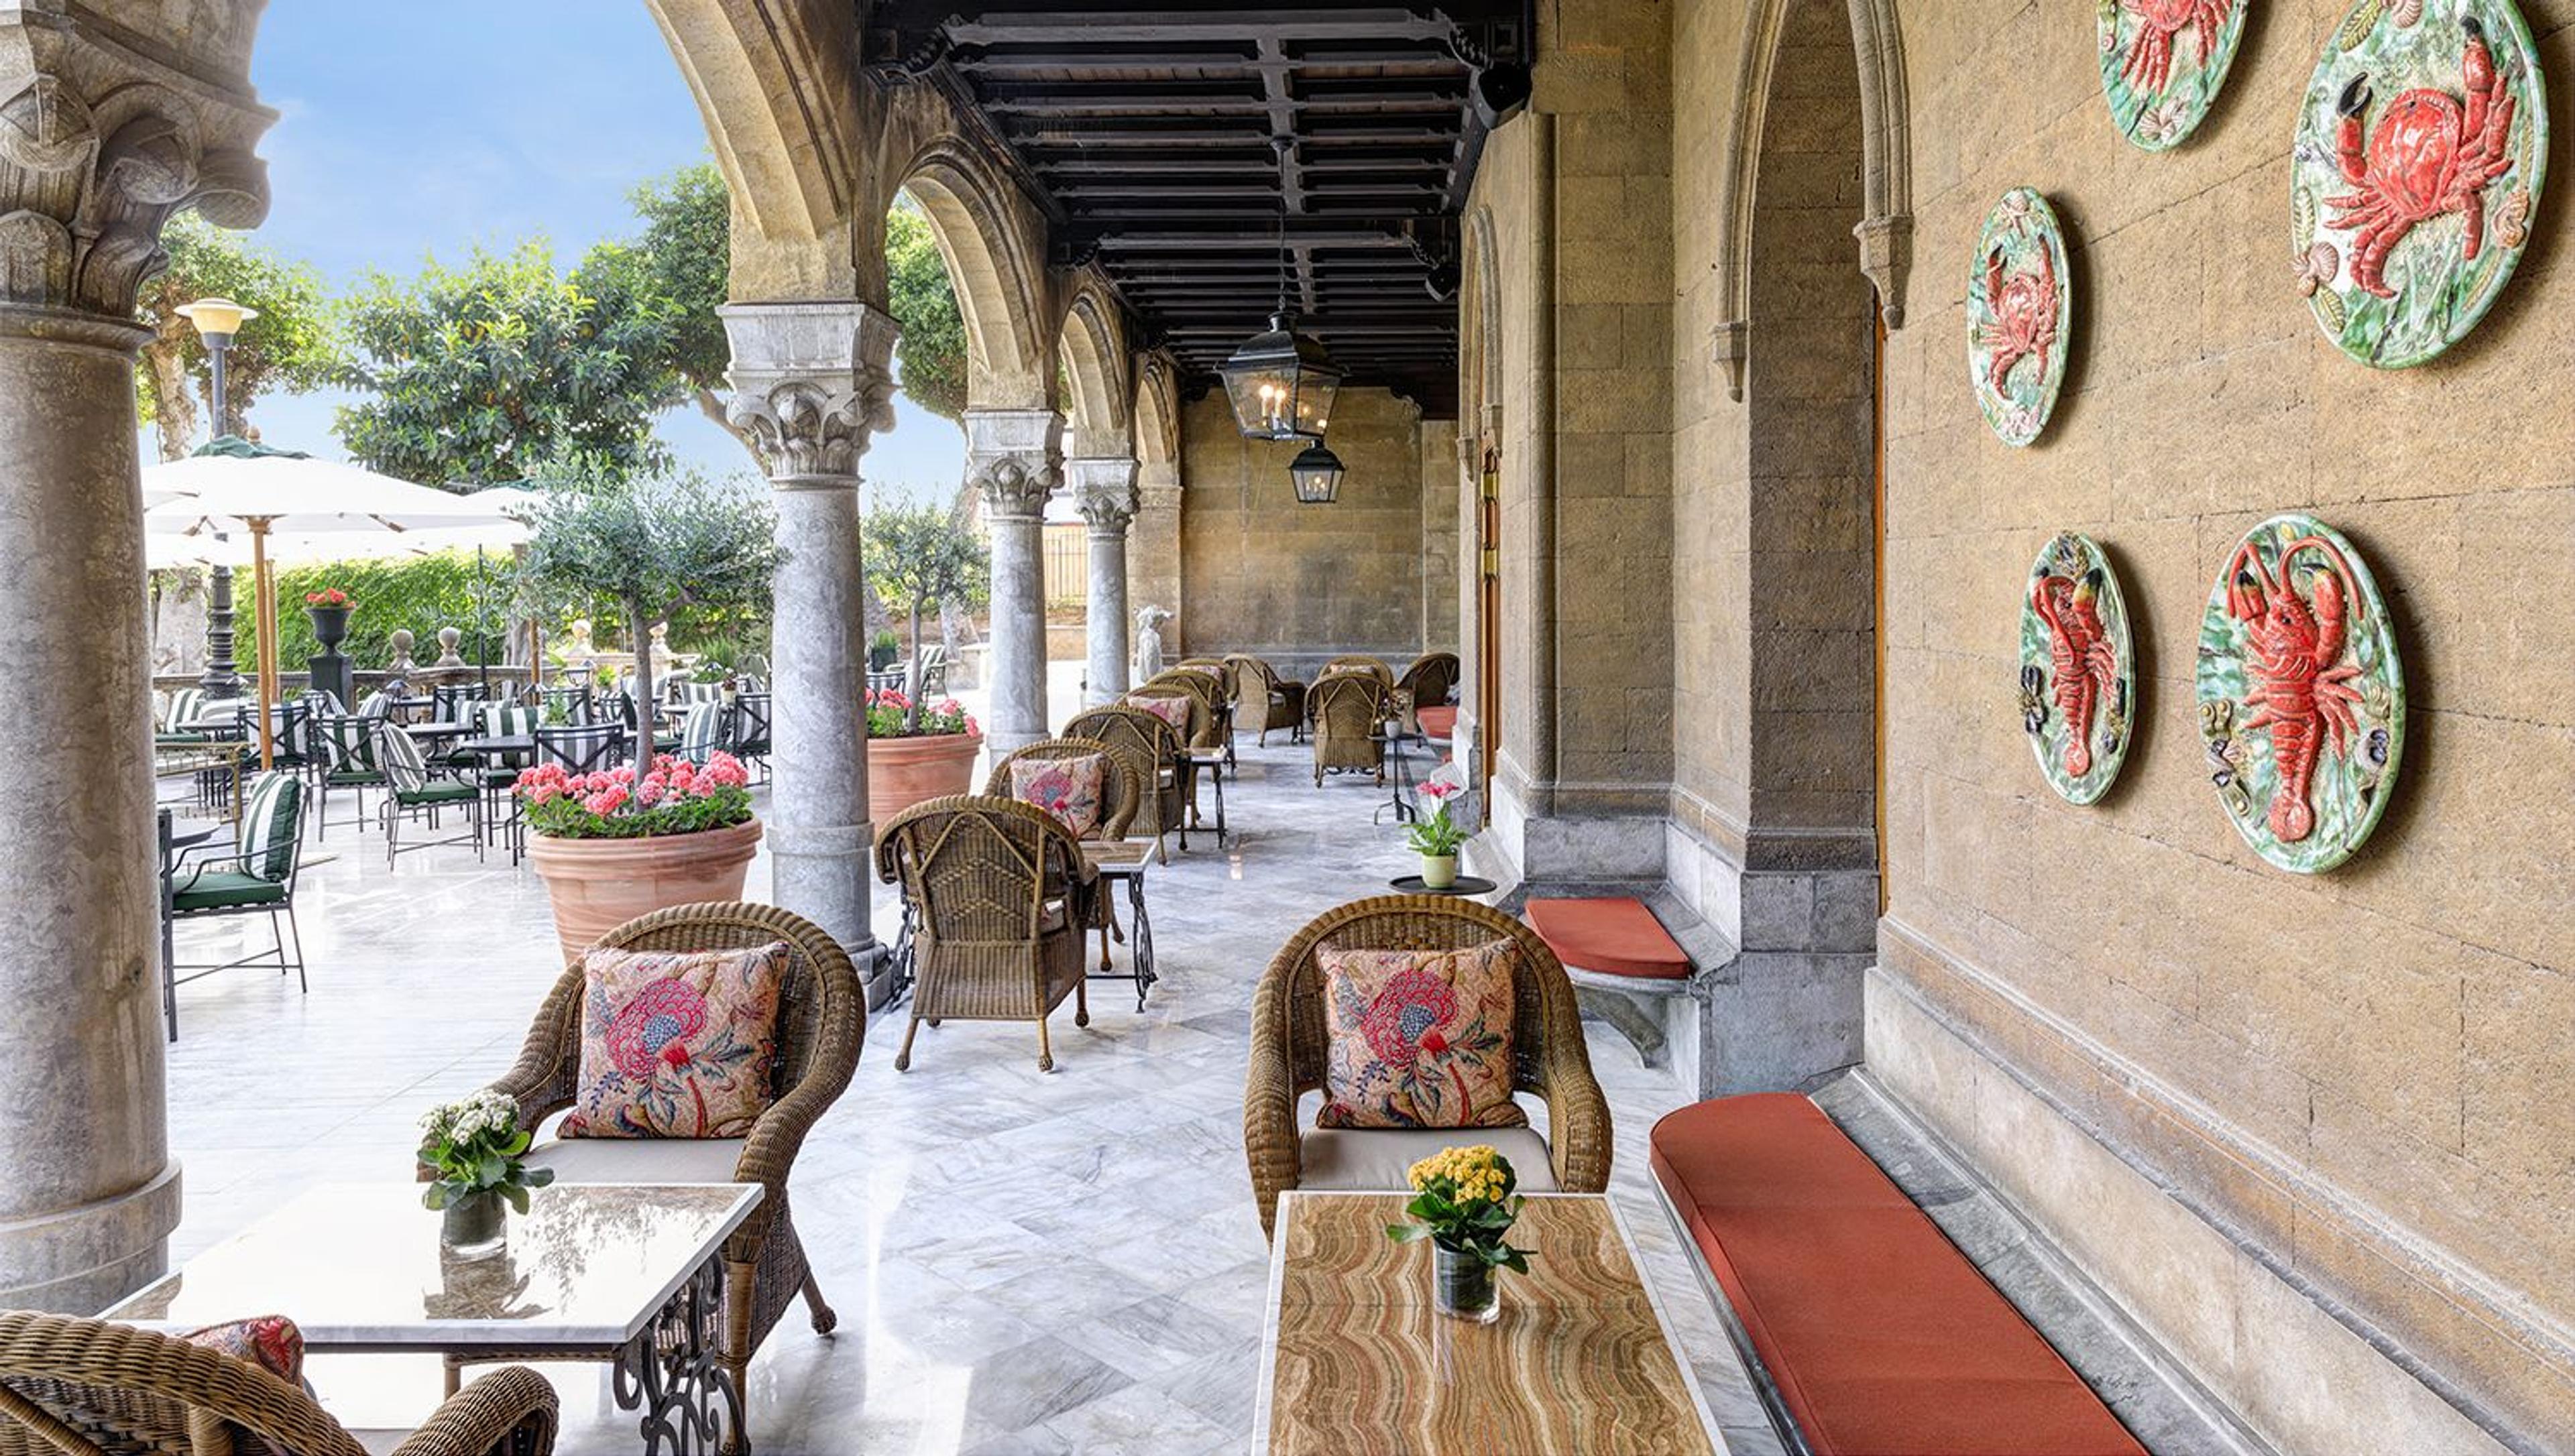 Sicilian Grandeur at Villa Igiea